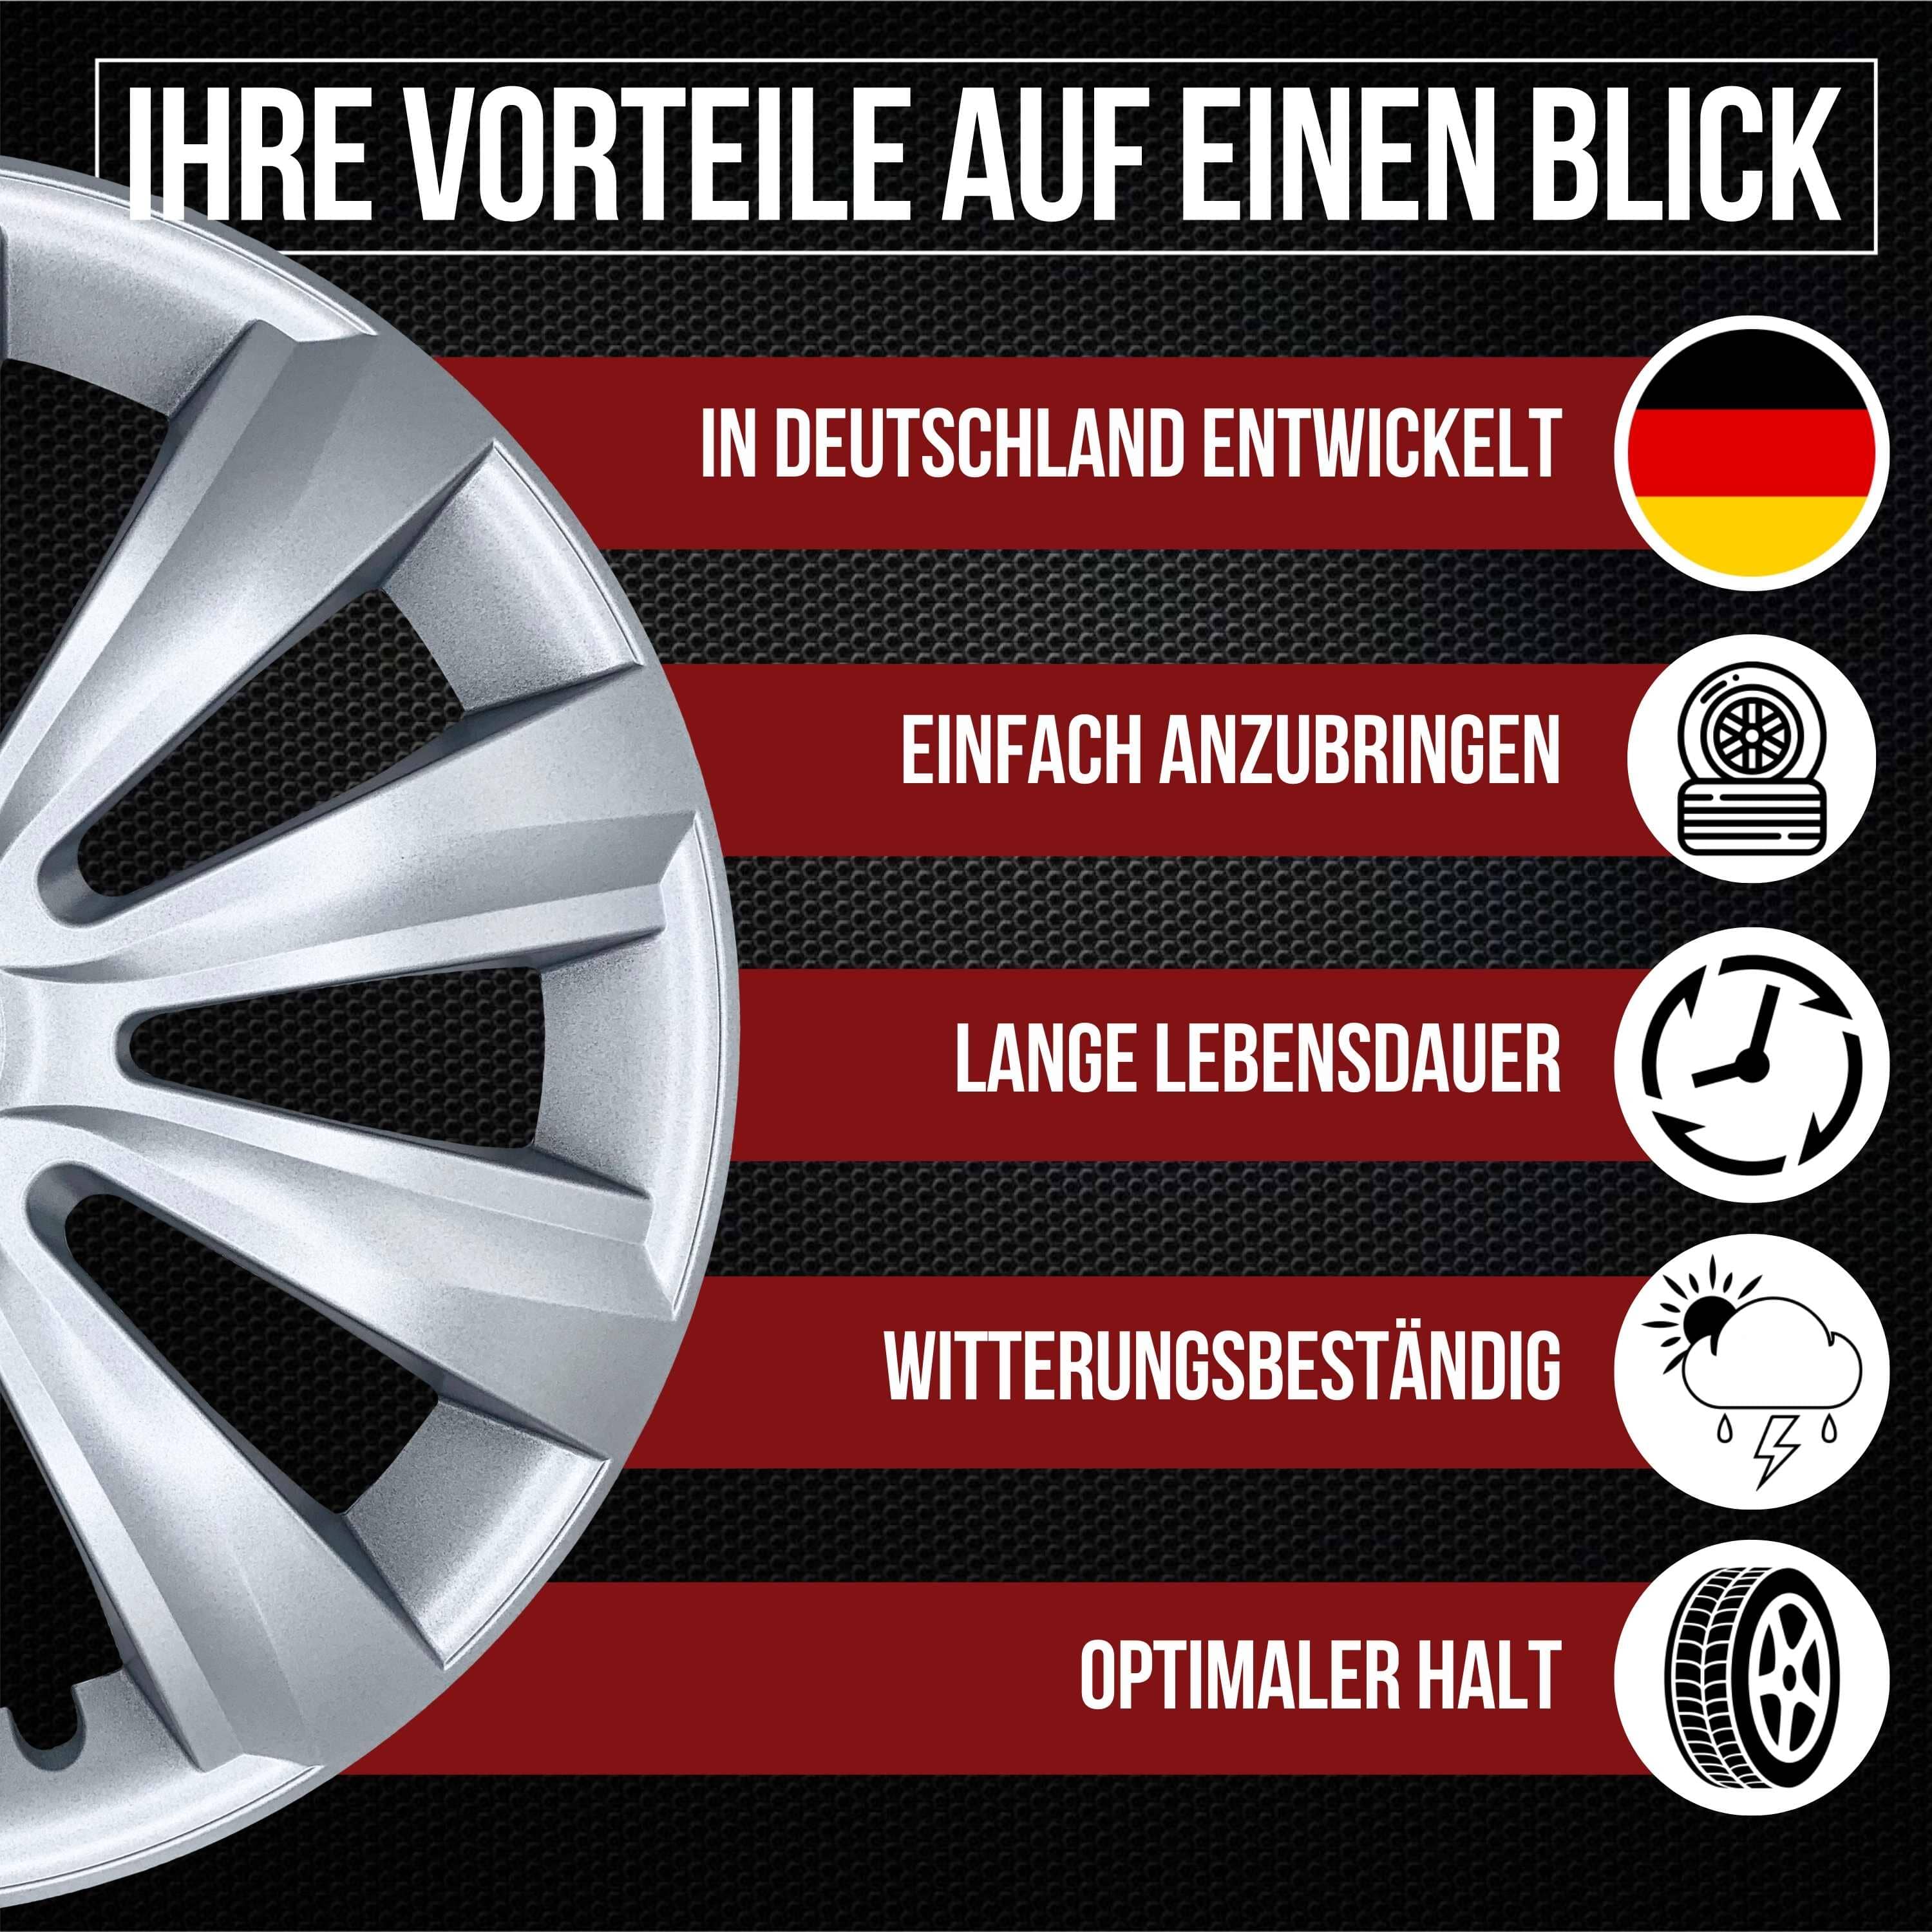 4 Stücke/set Universal Sport Buchstabe Design Auto Reifen